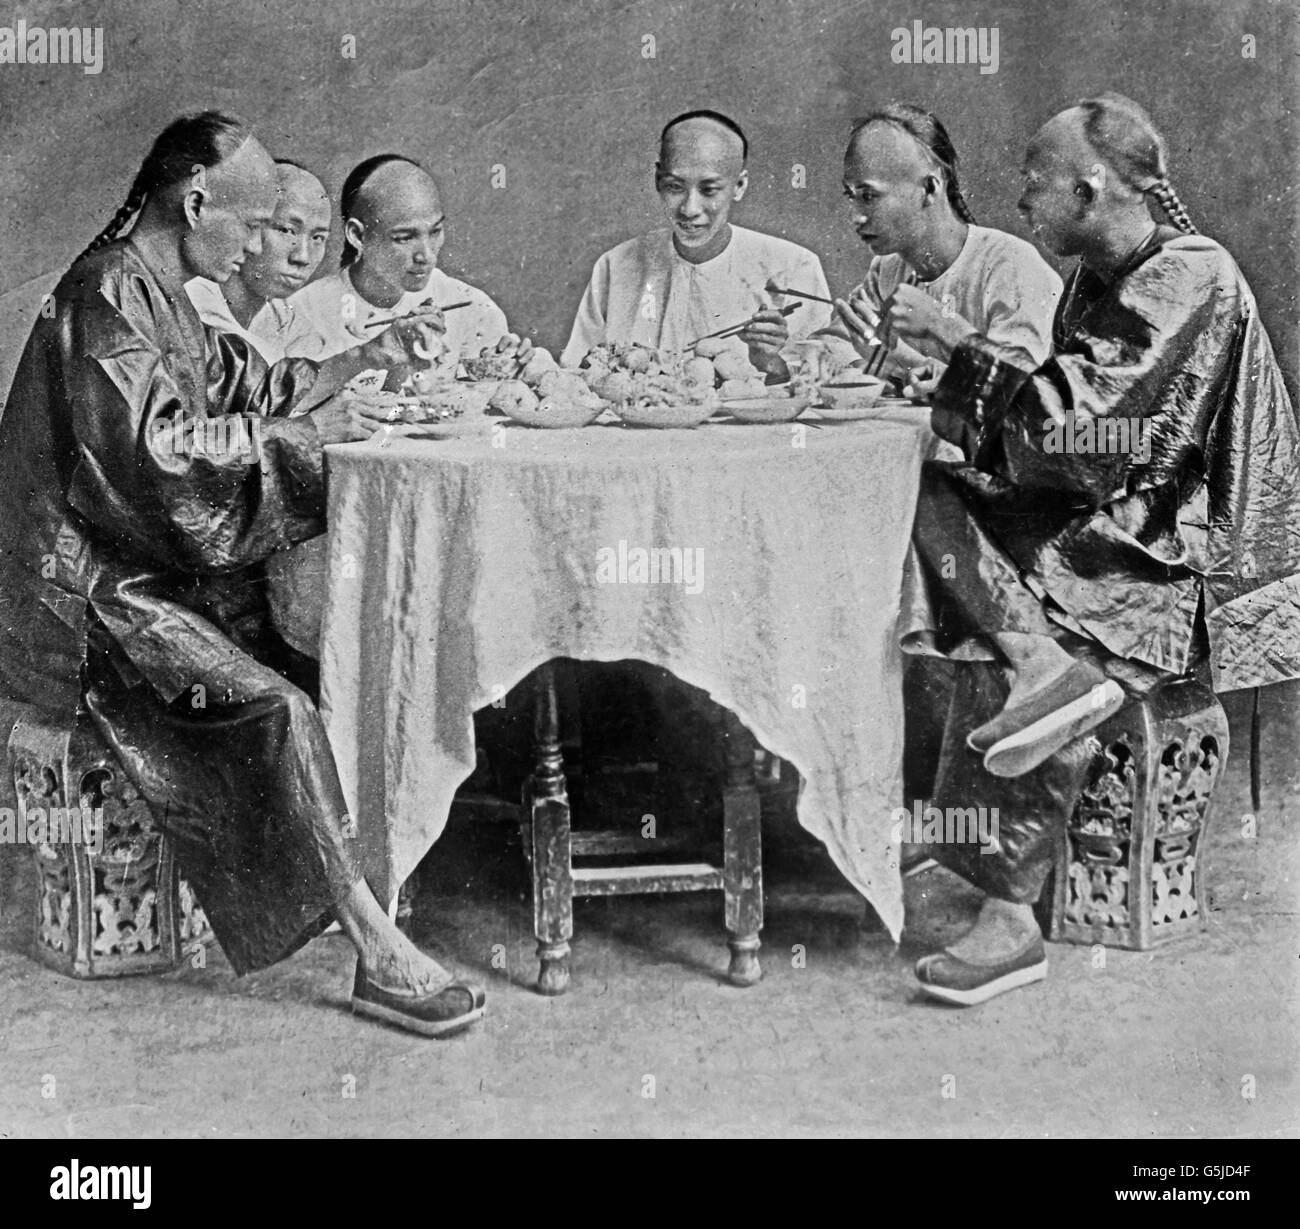 Chinesen Bei Einer Brauches, doppelstrebig aus Nudeln Und Dim-Su, China 1910er Jahre. Chinesen nehmen eine Mahlzeit aus Nudeln und Dim-Sum-Knödel, China 1910er Jahre. Stockfoto